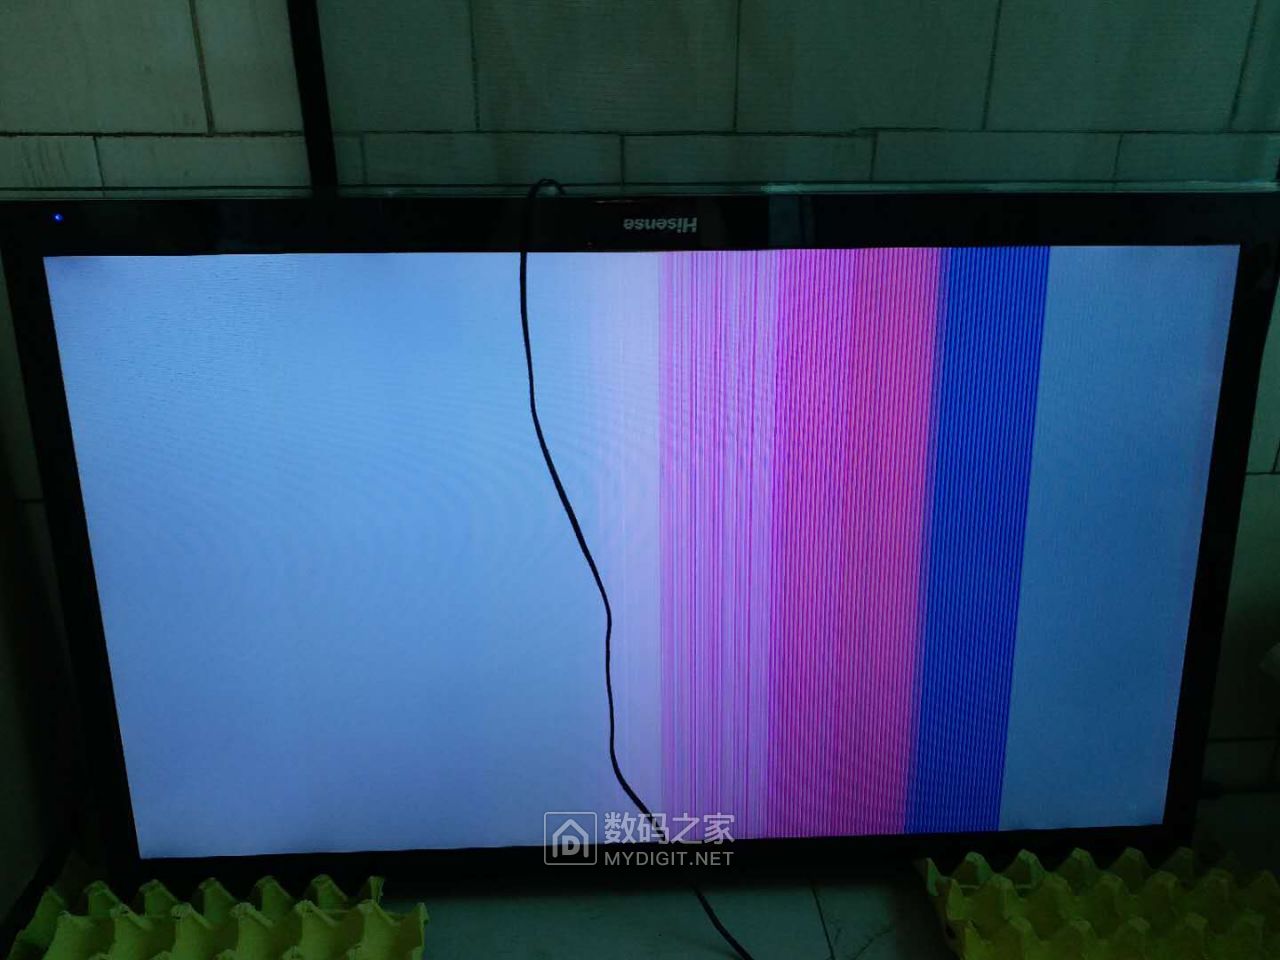 废品站的海信液晶电视,排线和排线座腐蚀,换排线后有彩条,继续求助